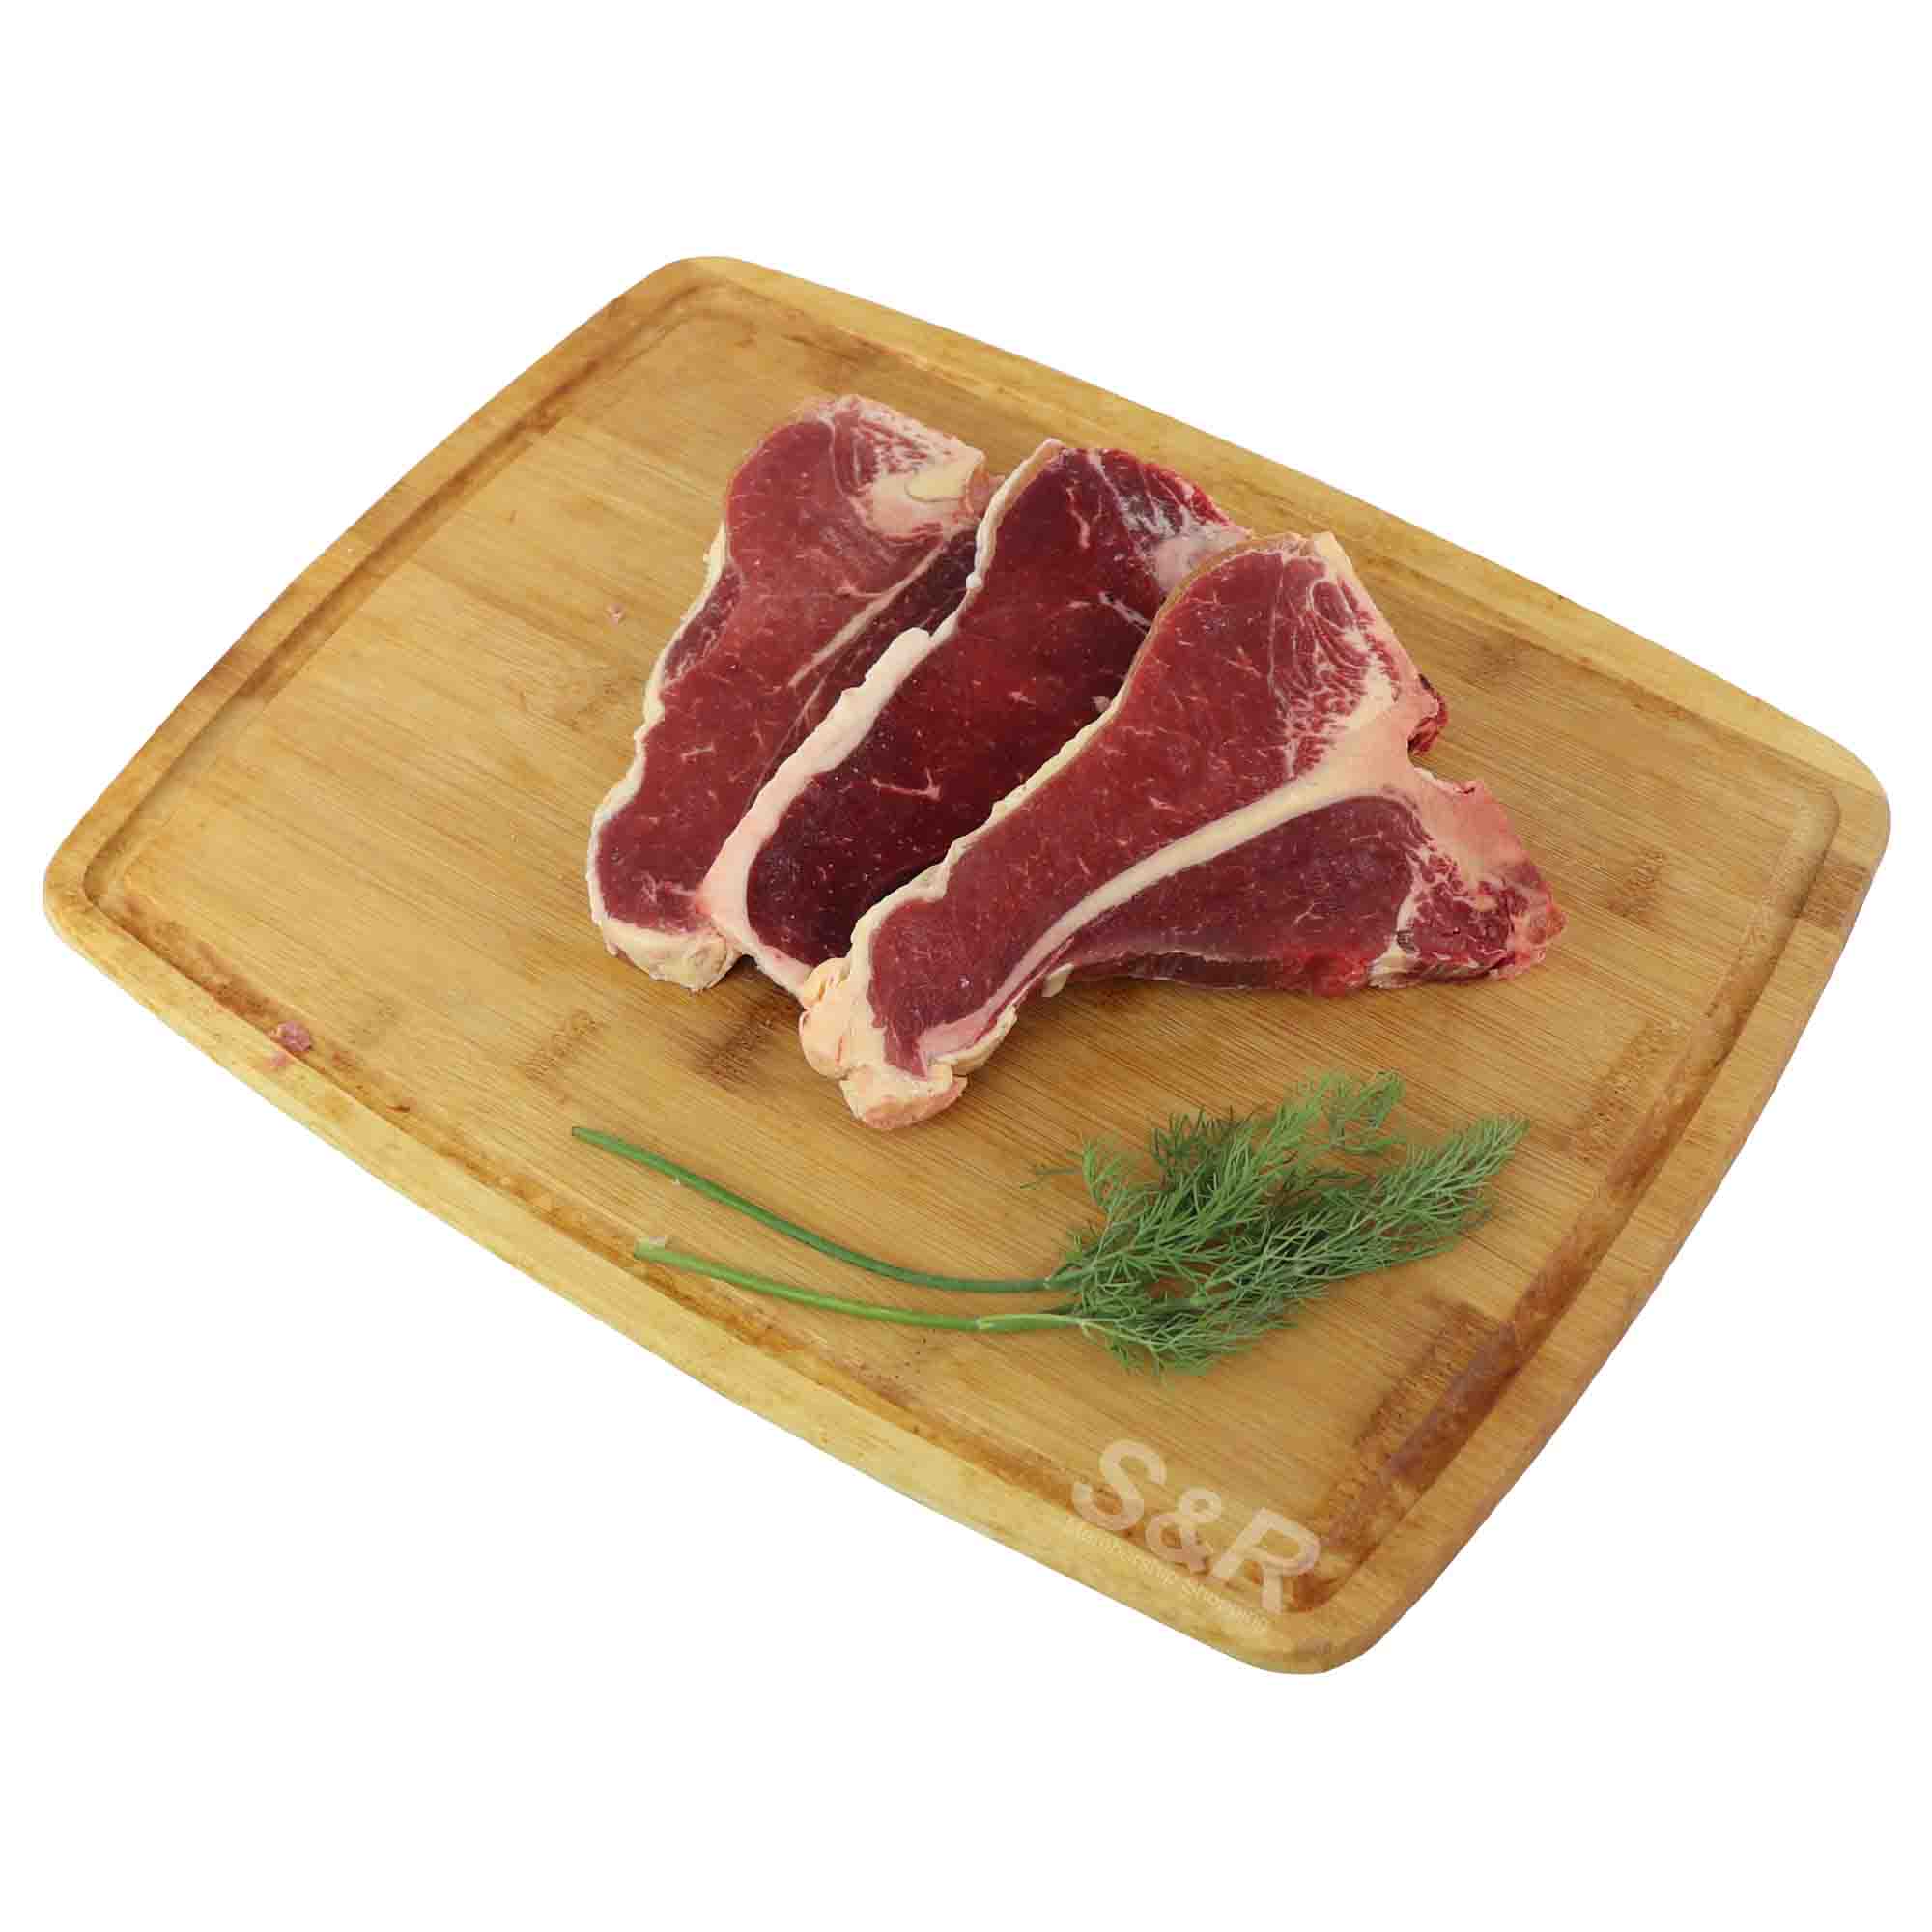 Australia Beef T-Bone Steak approx. 1.2kg